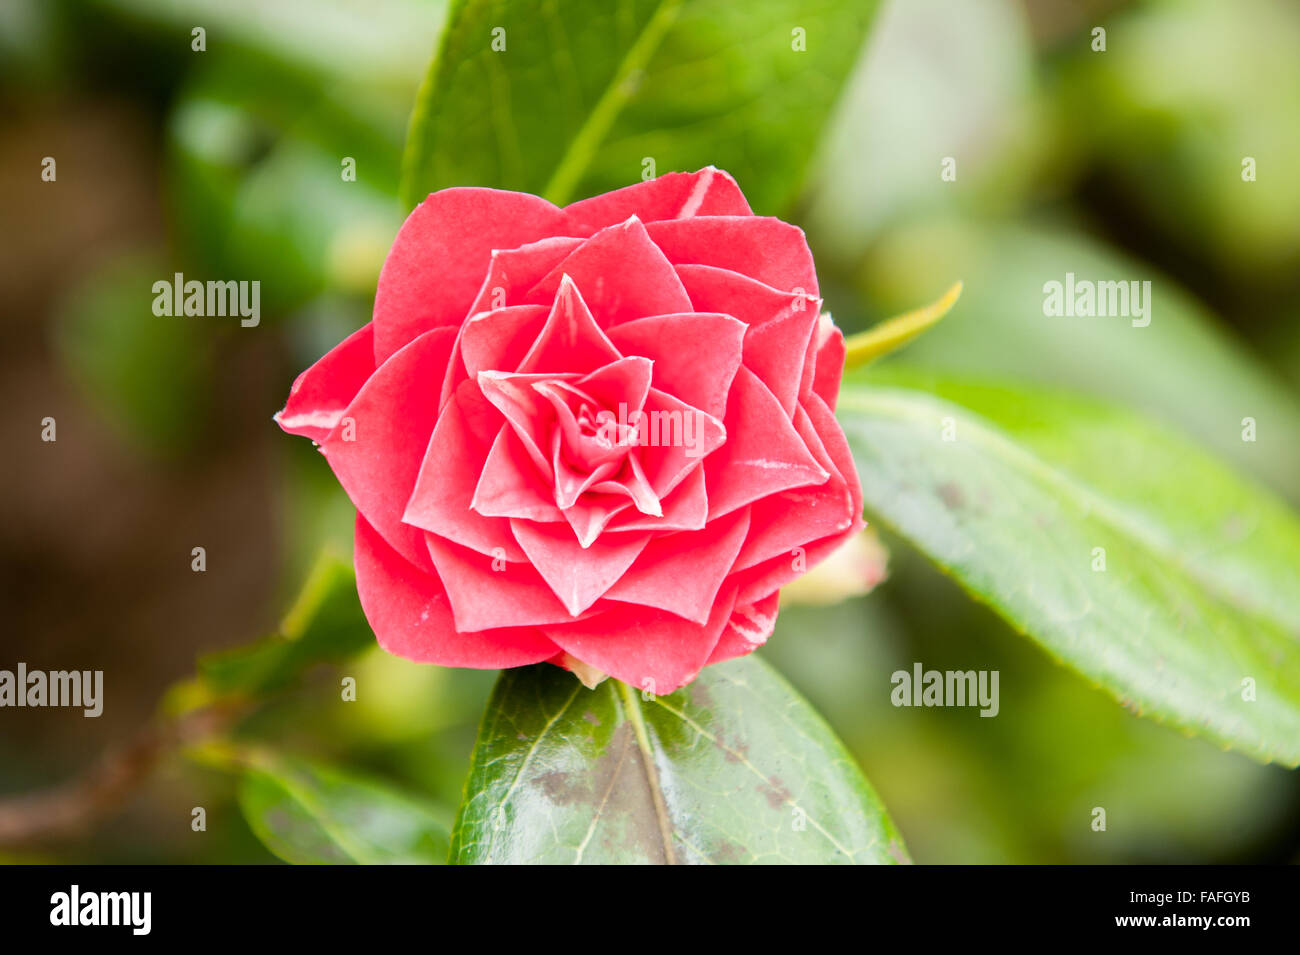 Nahaufnahme einer einzigartig aussehende rote farbige rose Blume Stockfoto